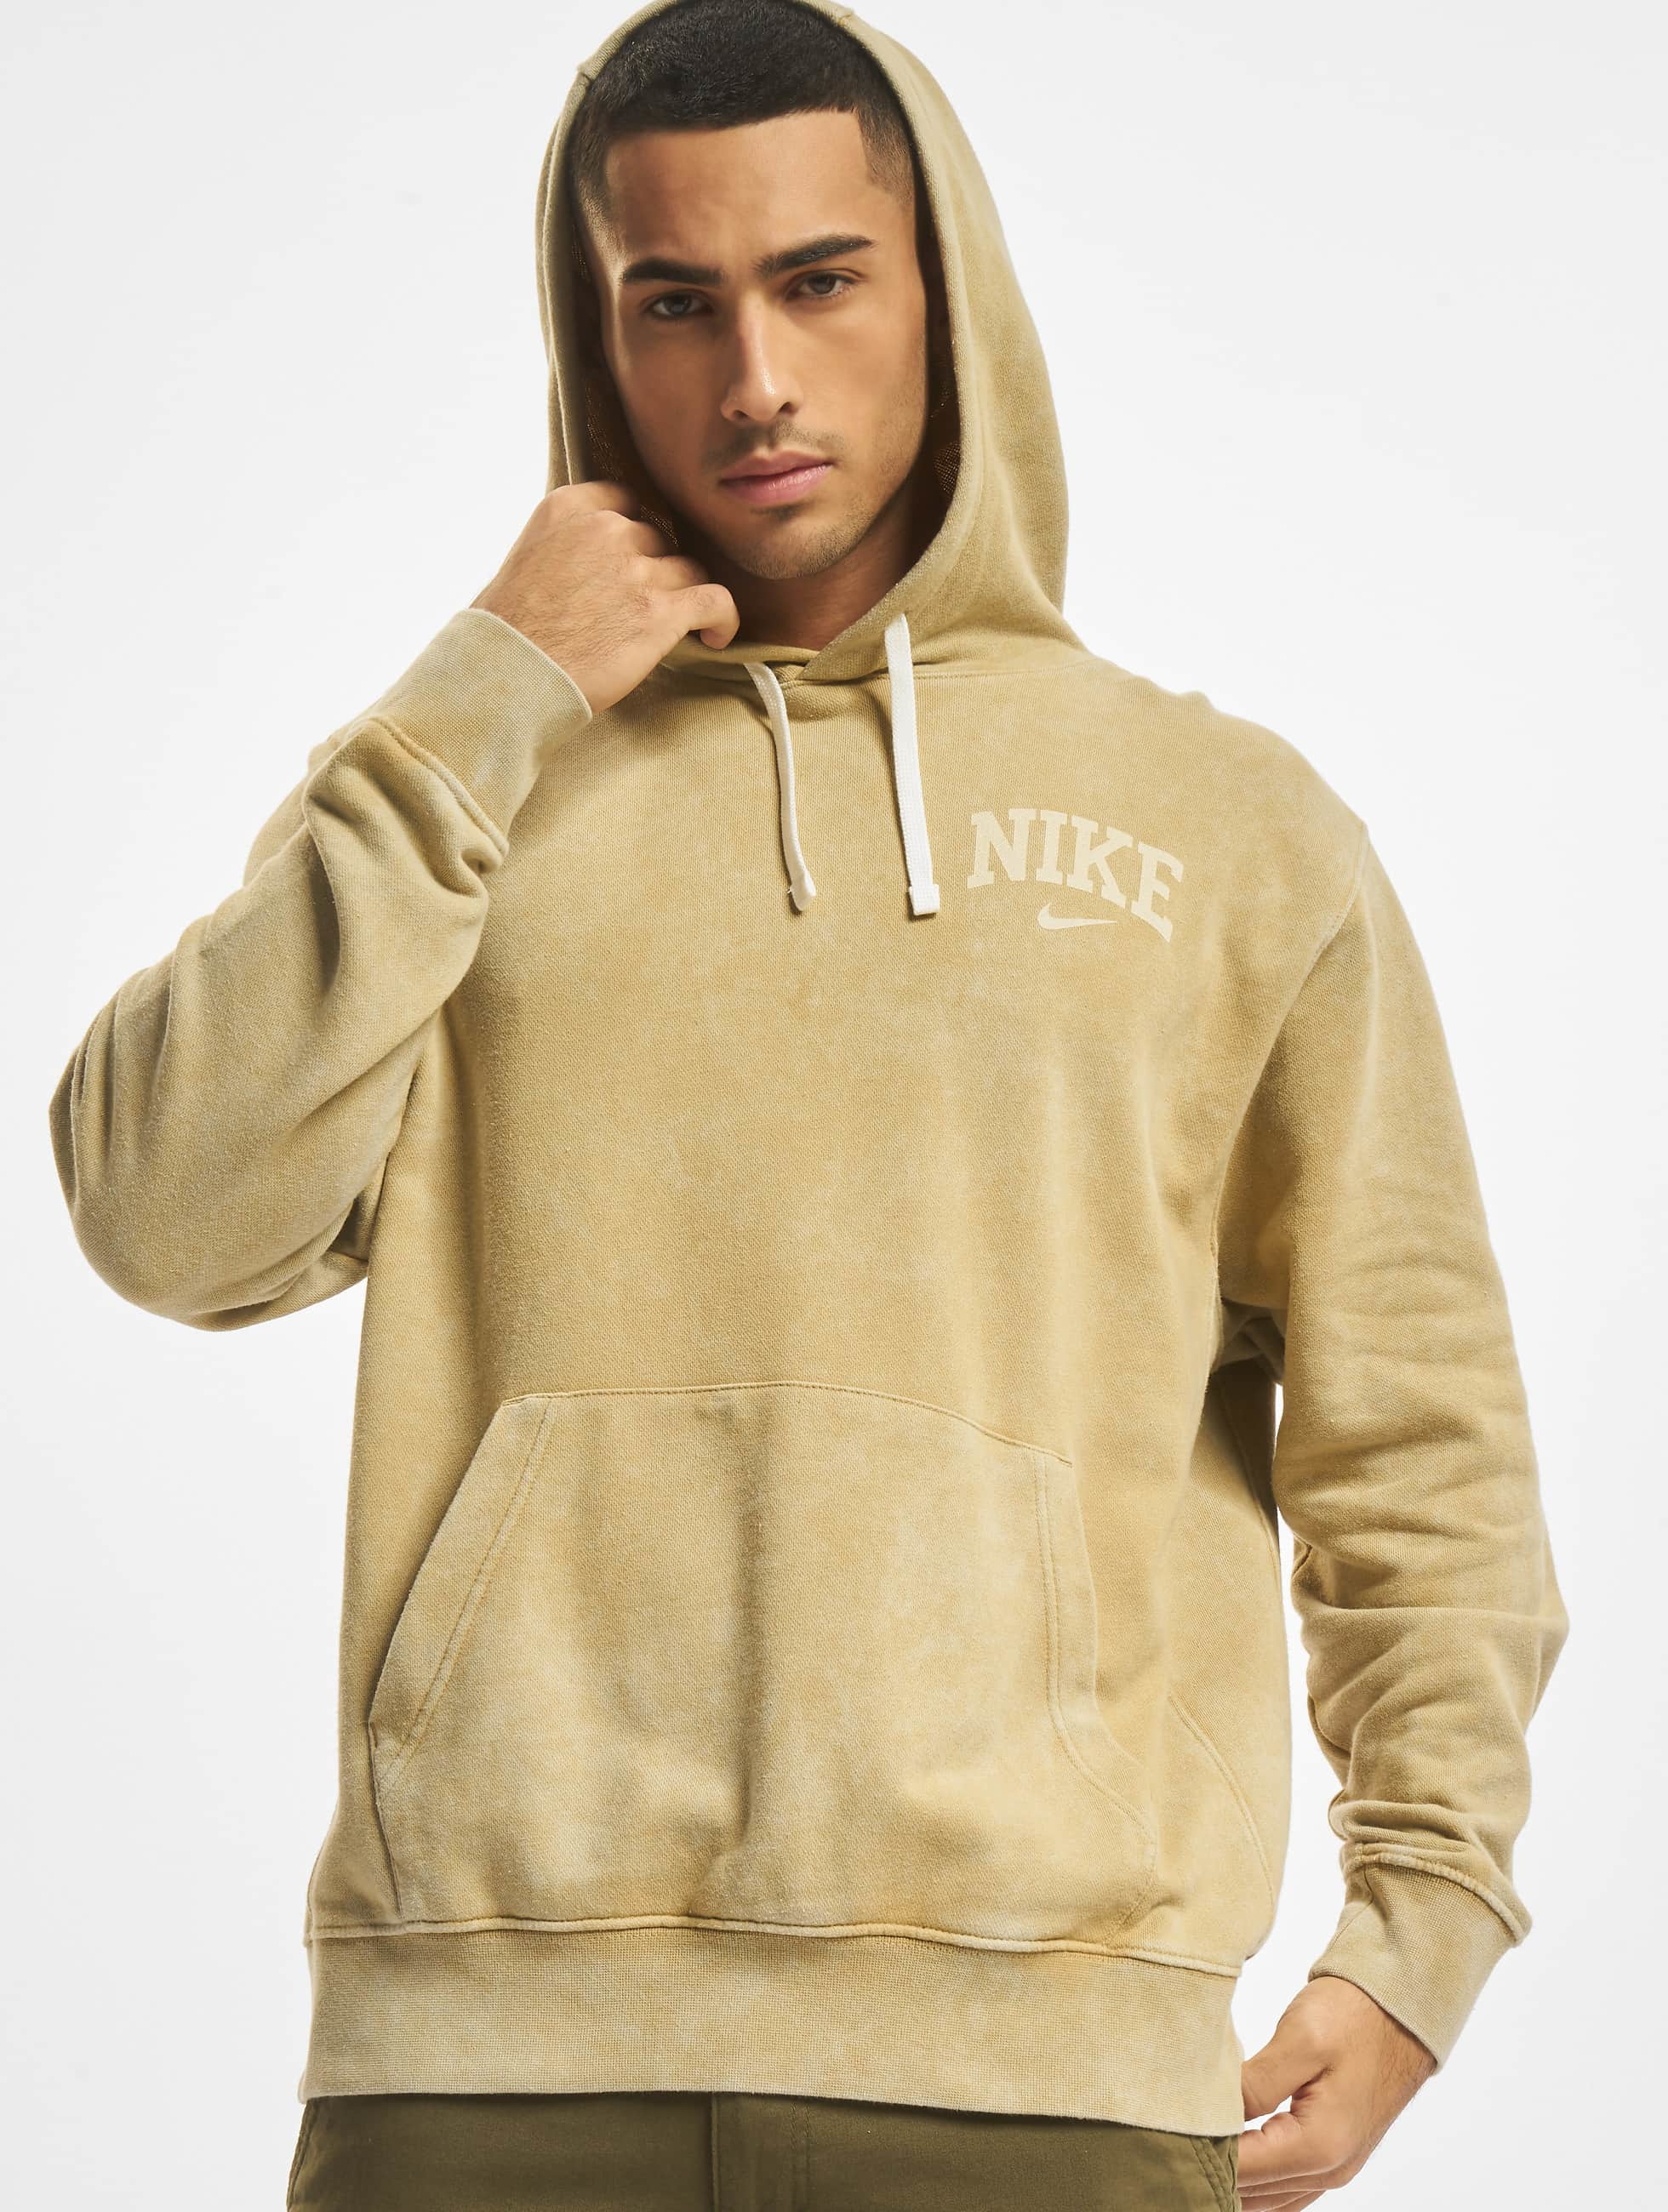 Uitvoerder kralen Beroep Nike bovenstuk / Hoody Arch Fleece Ft in beige 876083